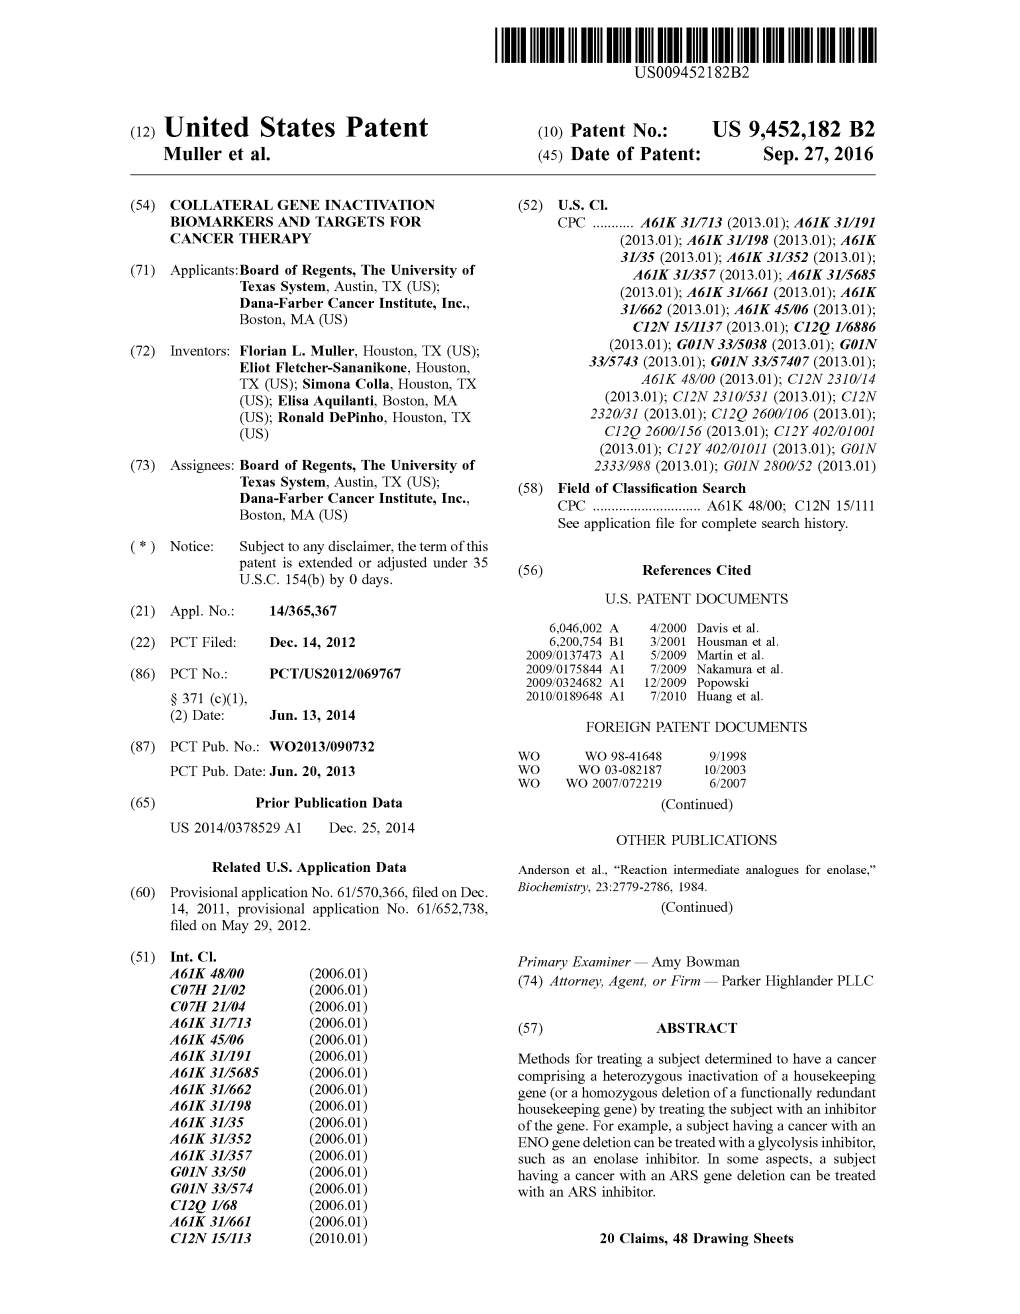 (12) United States Patent (10) Patent No.: US 9,452,182 B2 Muller Et Al